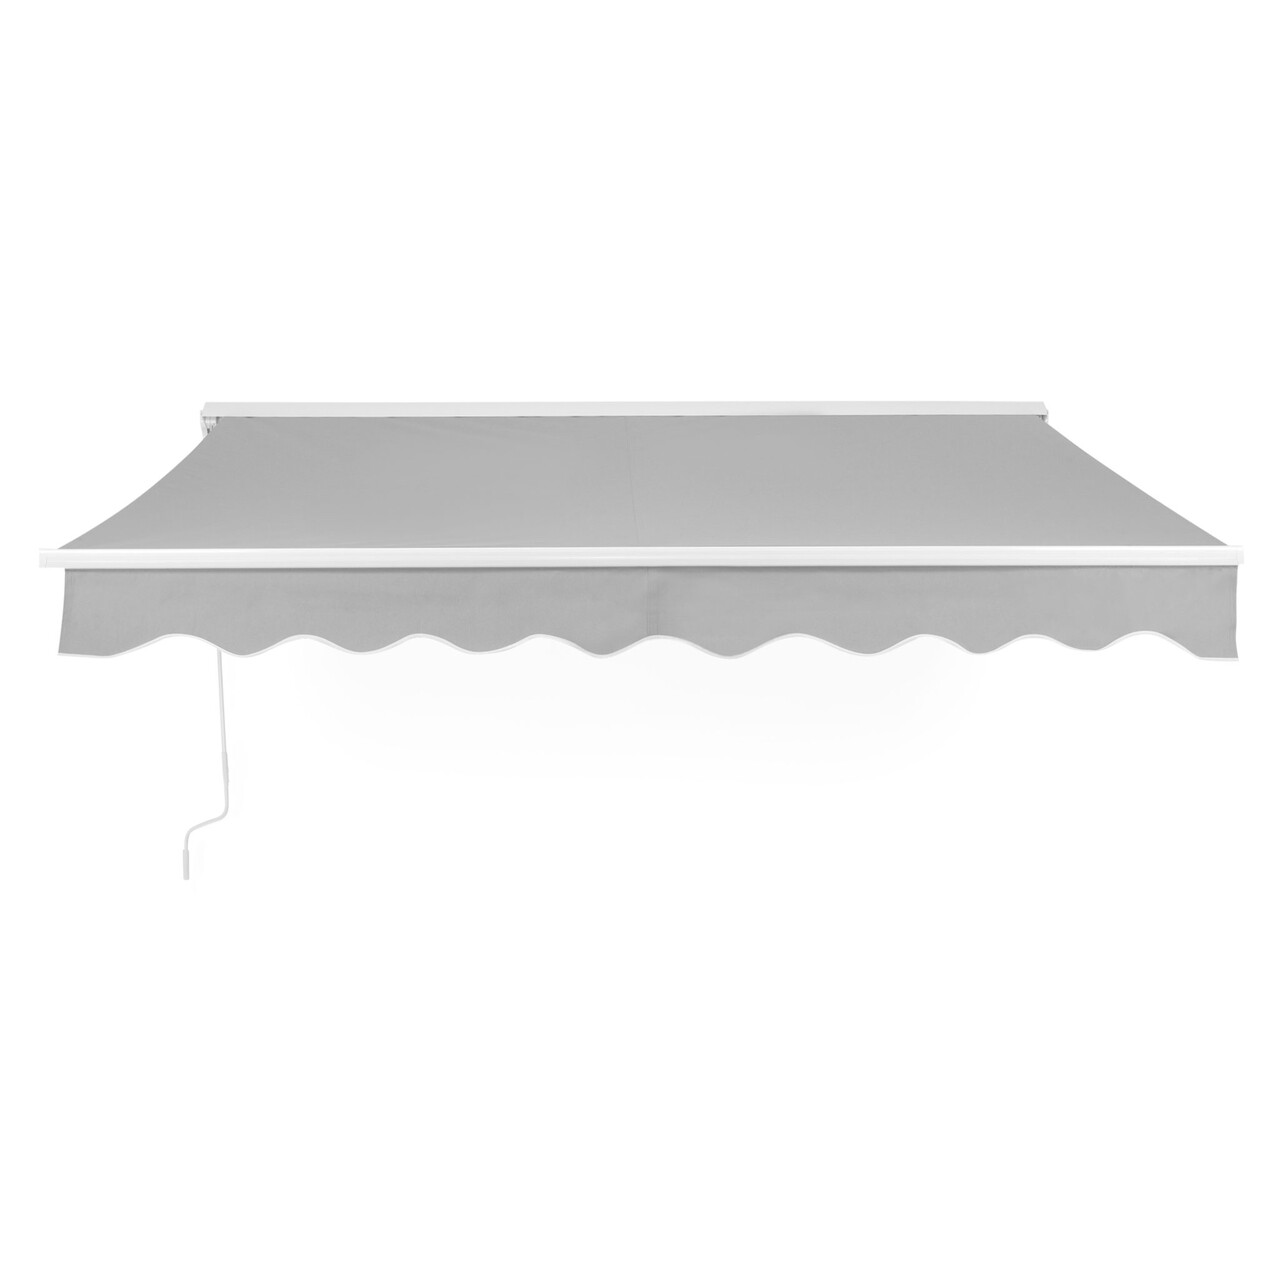 Maison burgas fali napellenző, l.295 l.250 cm, alumínium/acél/poliészter, fehér/szürke